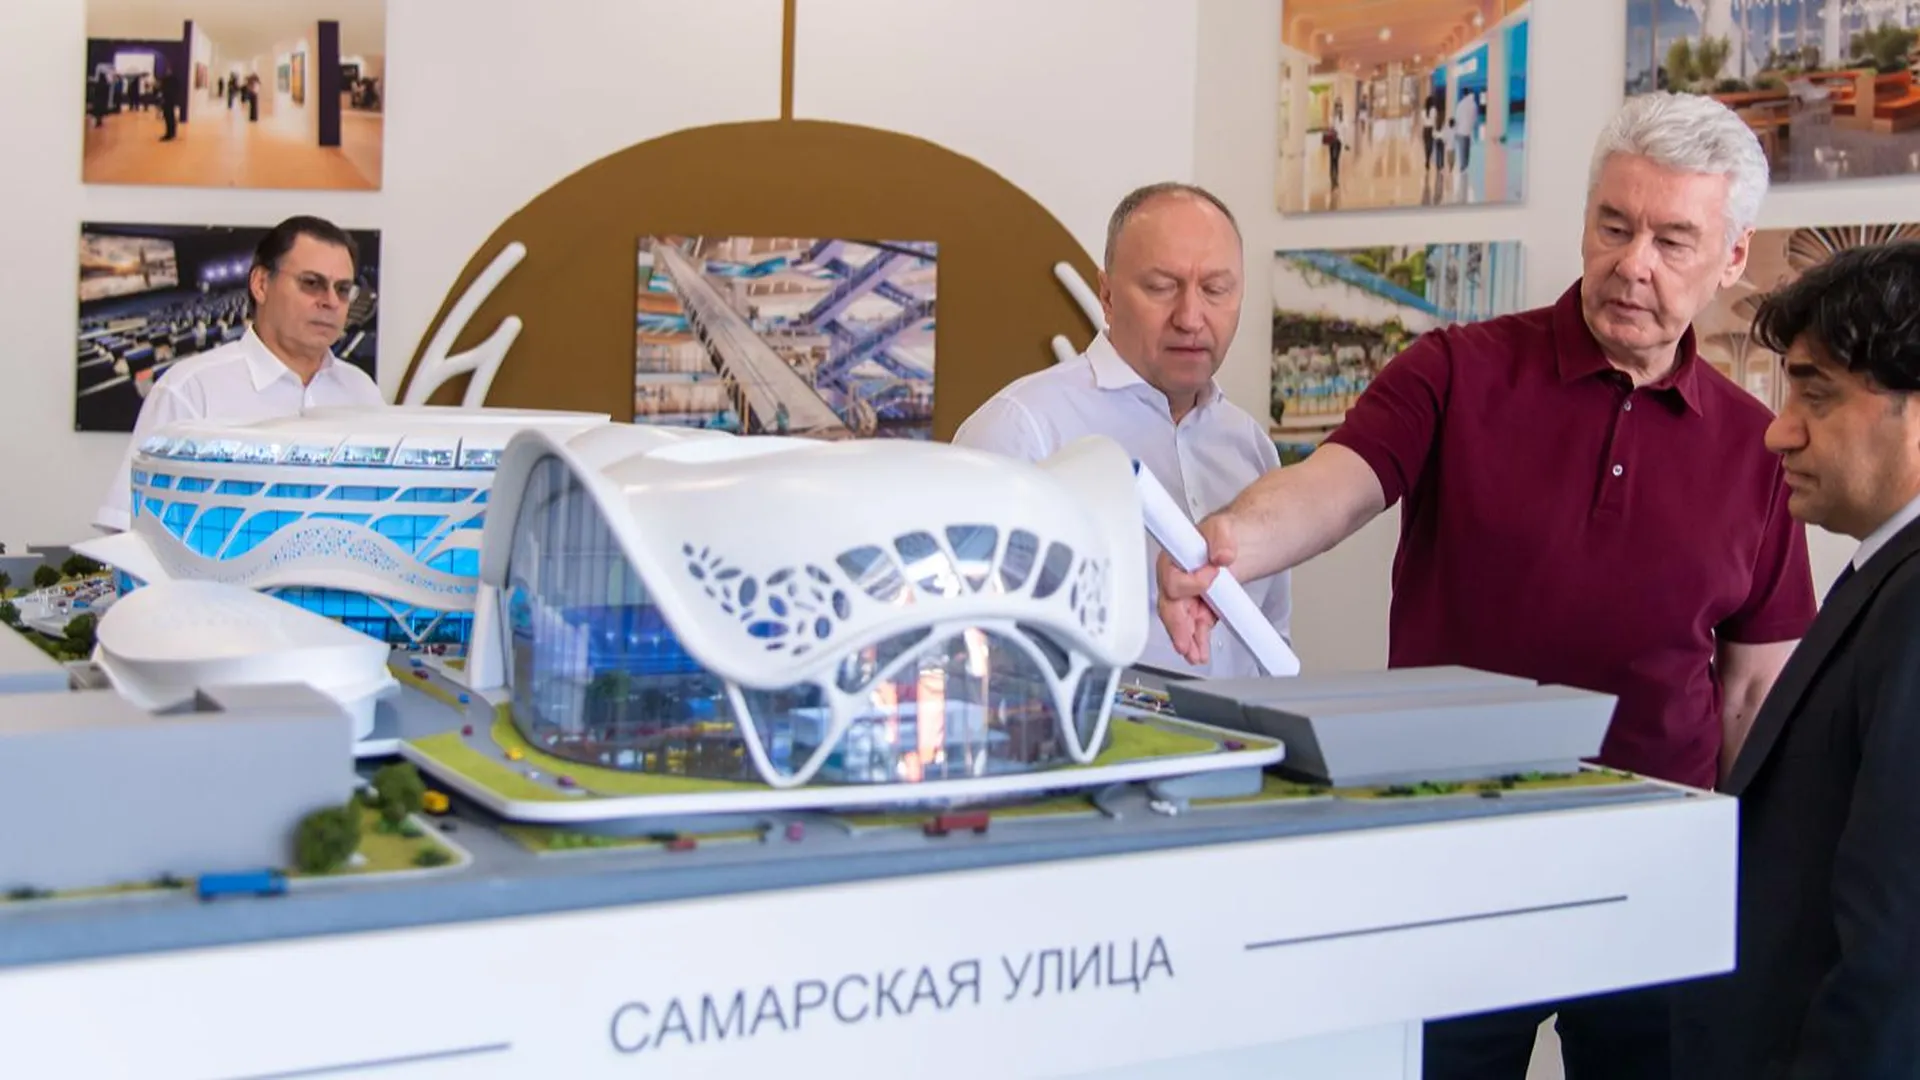 Москвичам рассказали, как преобразится спорткомплекс «Олимпийский» после реконструкции